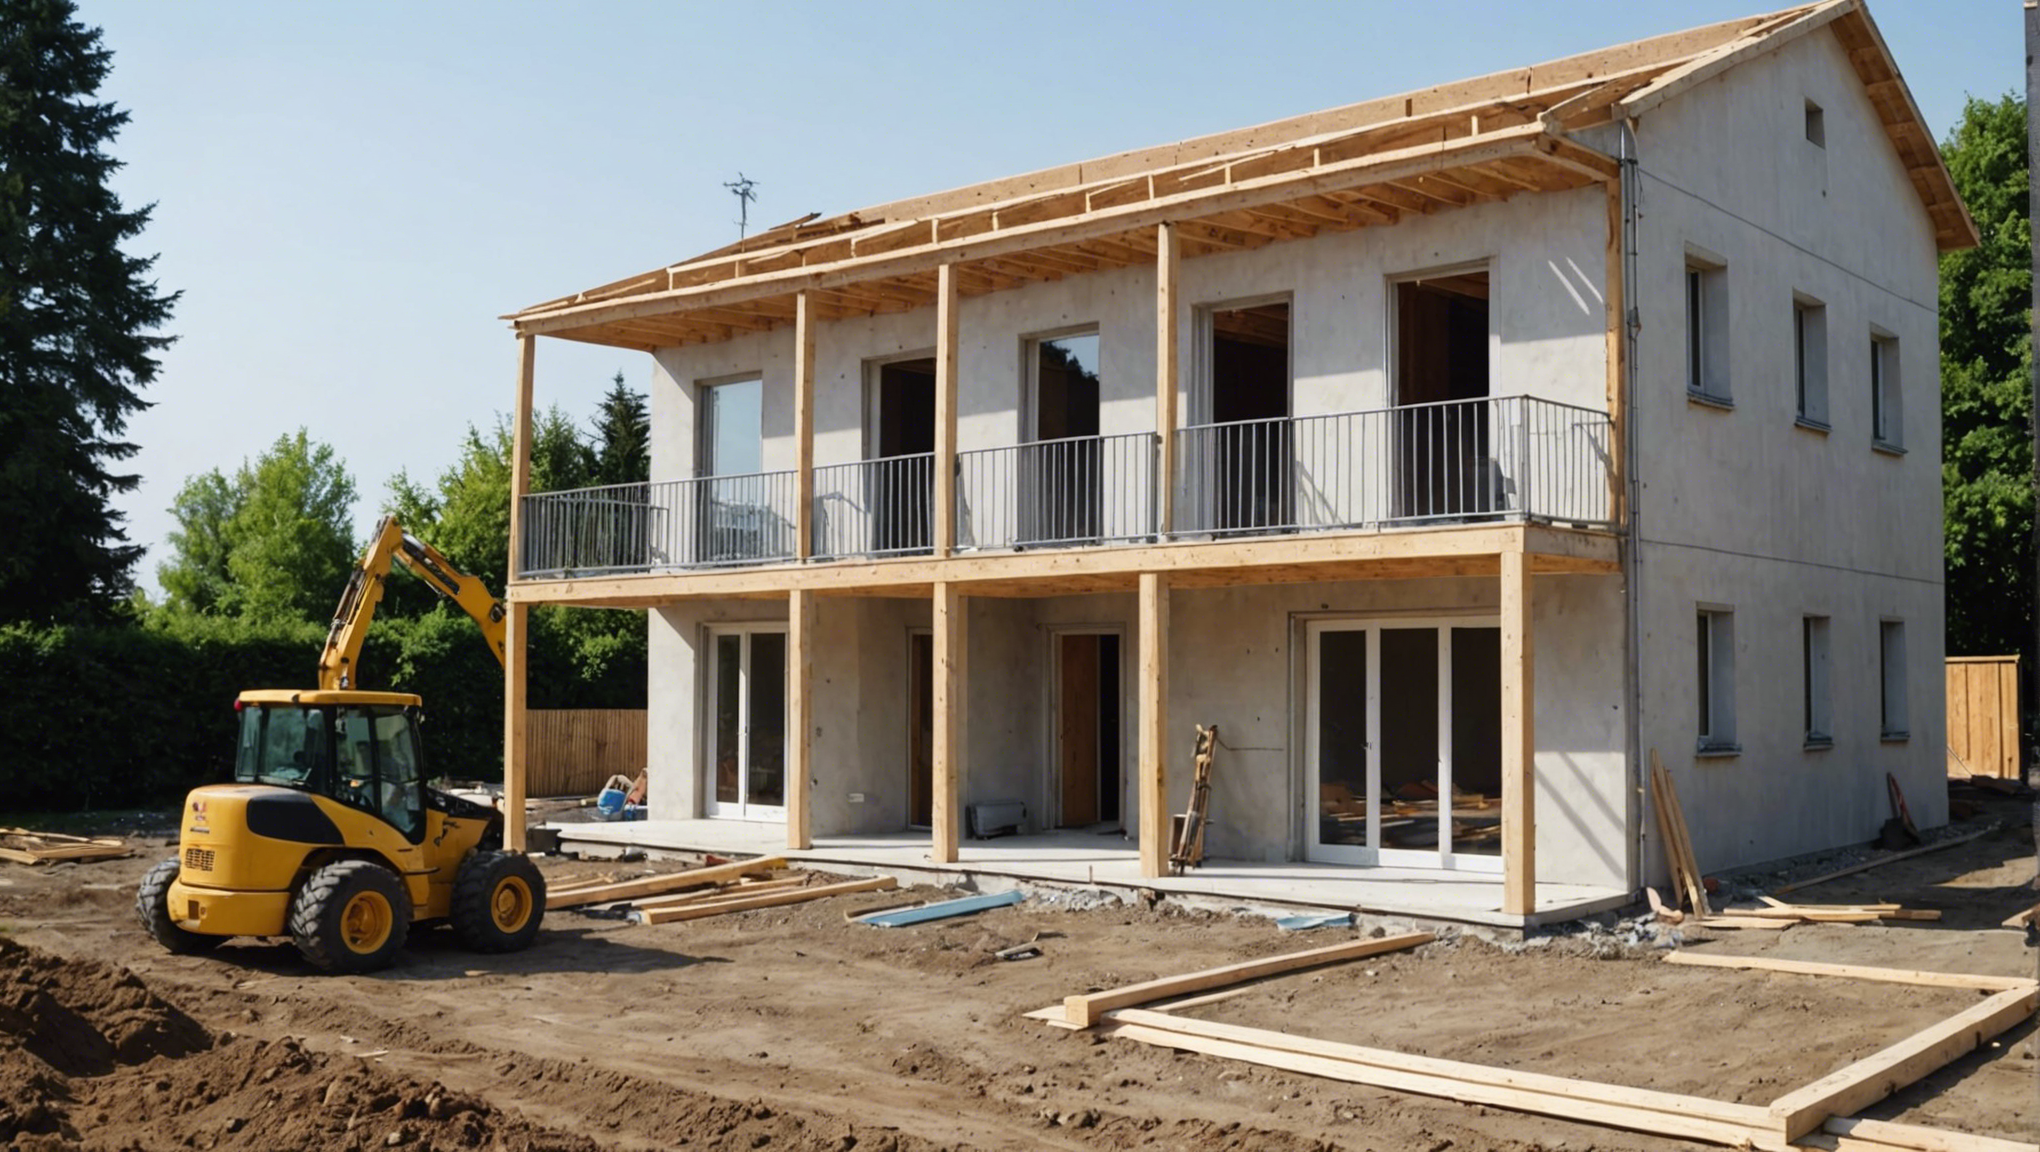 découvrez comment planifier efficacement les différentes étapes de construction d'une maison avec nos conseils pratiques et expertises dans le domaine de la construction immobilière.